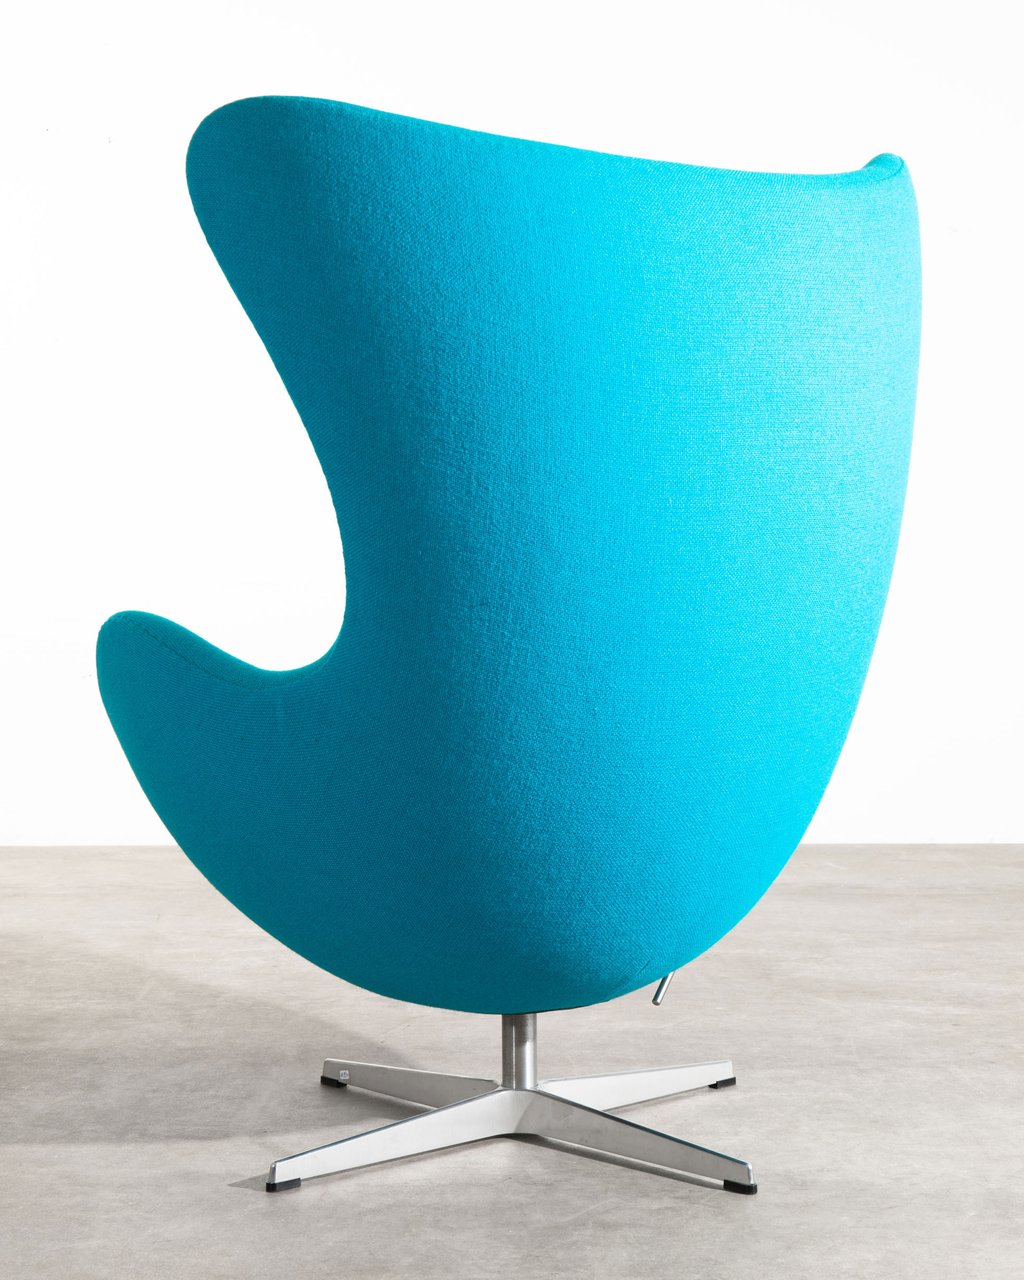 Image 2 of "Egg chair" by Arne Jacobsen for Fritz Hansen